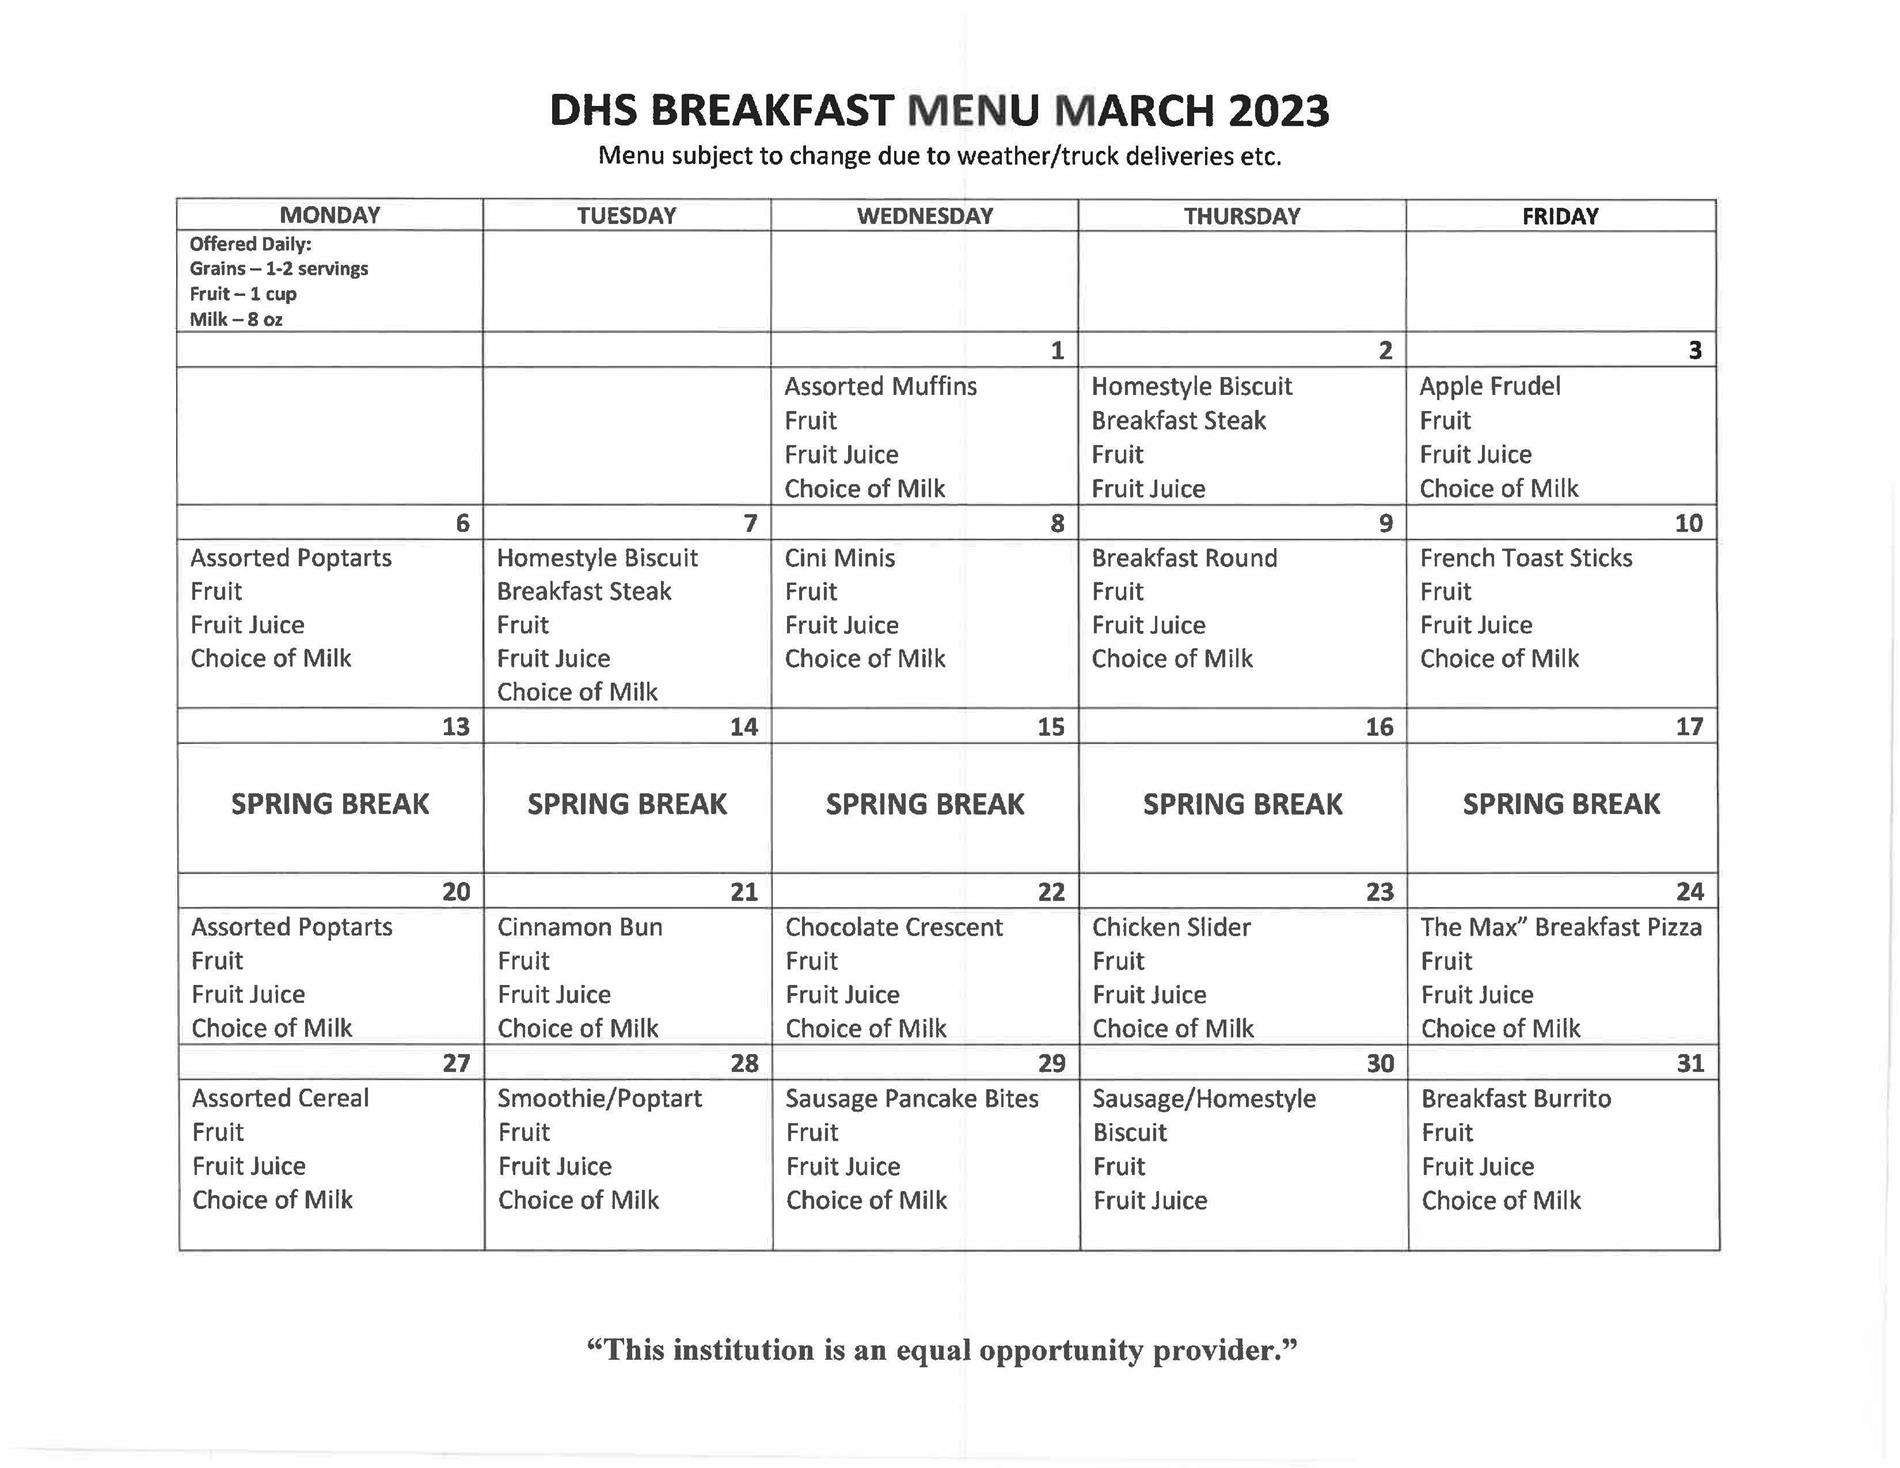 DHS Breakfast Menu